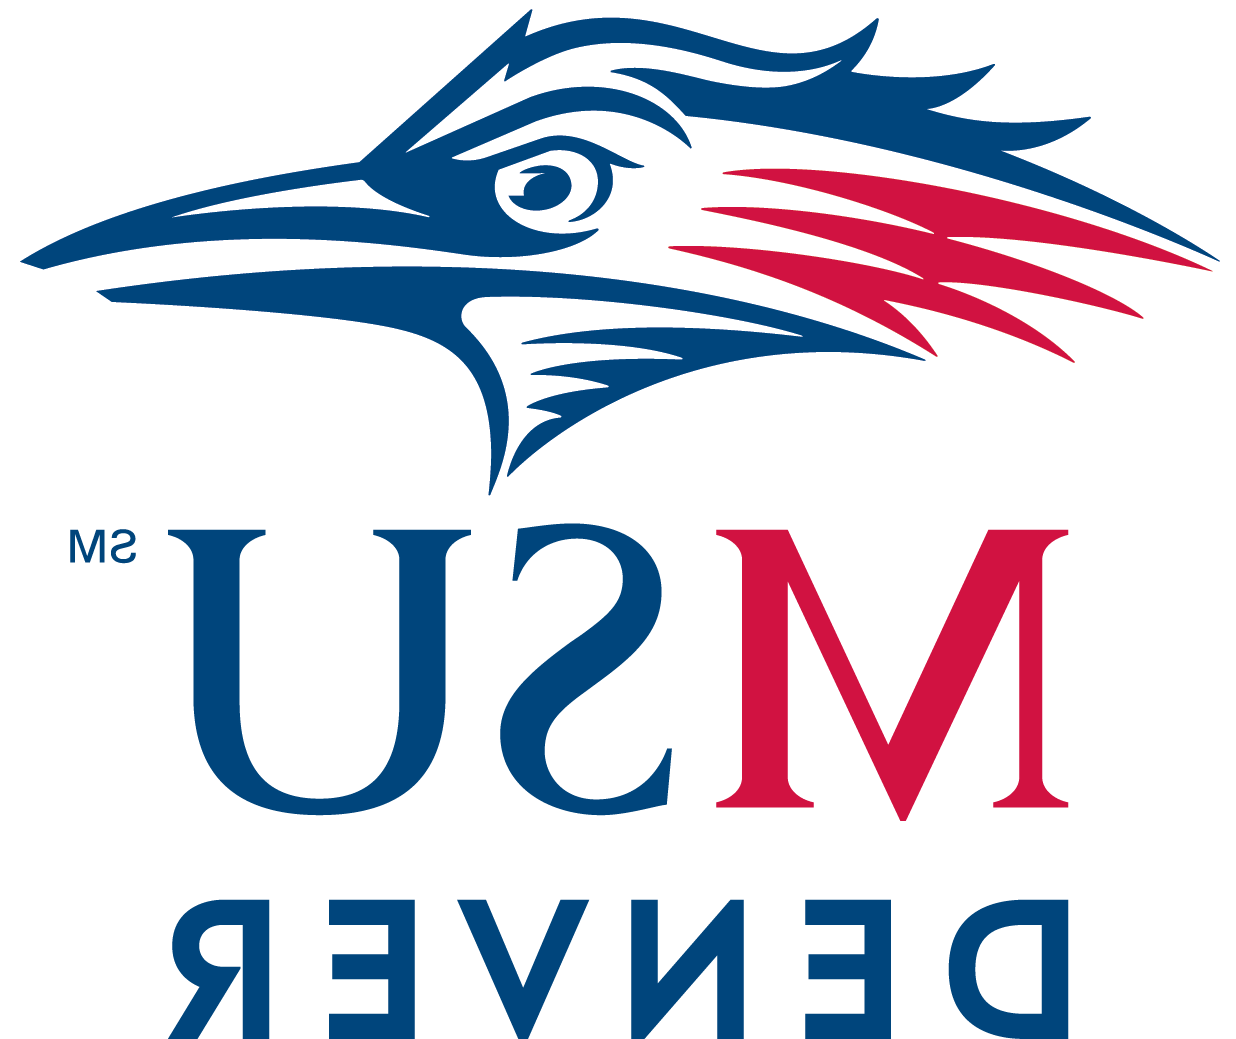 密歇根州立大学丹佛分校的标志是蓝、白、红三色的跑鸟